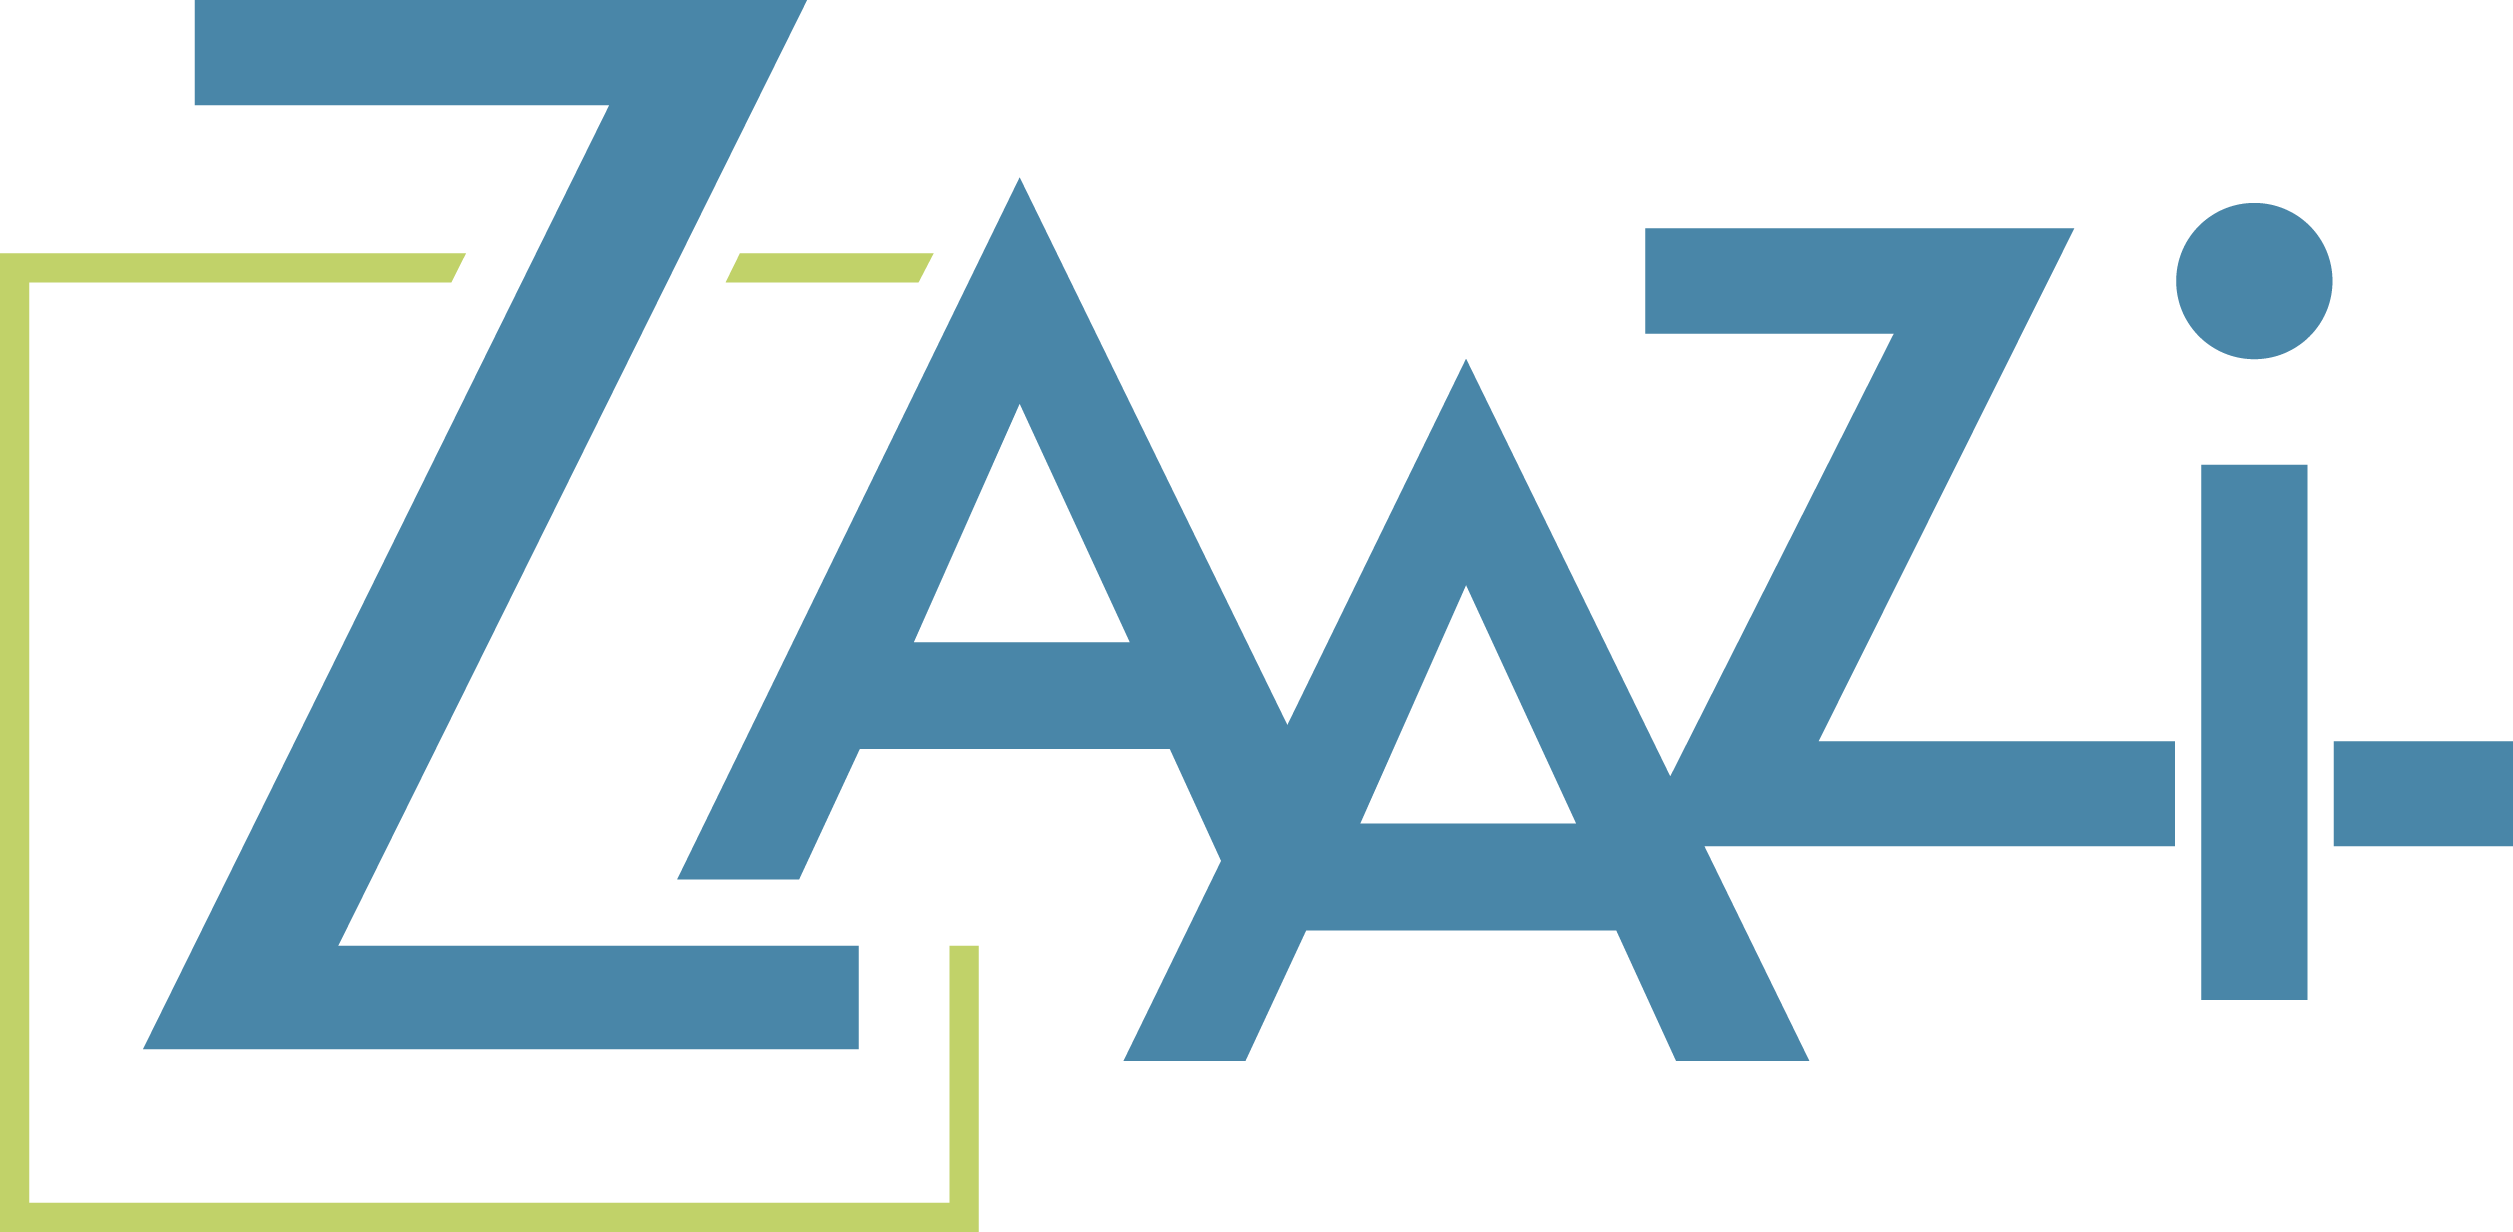 Zaazi's logo.